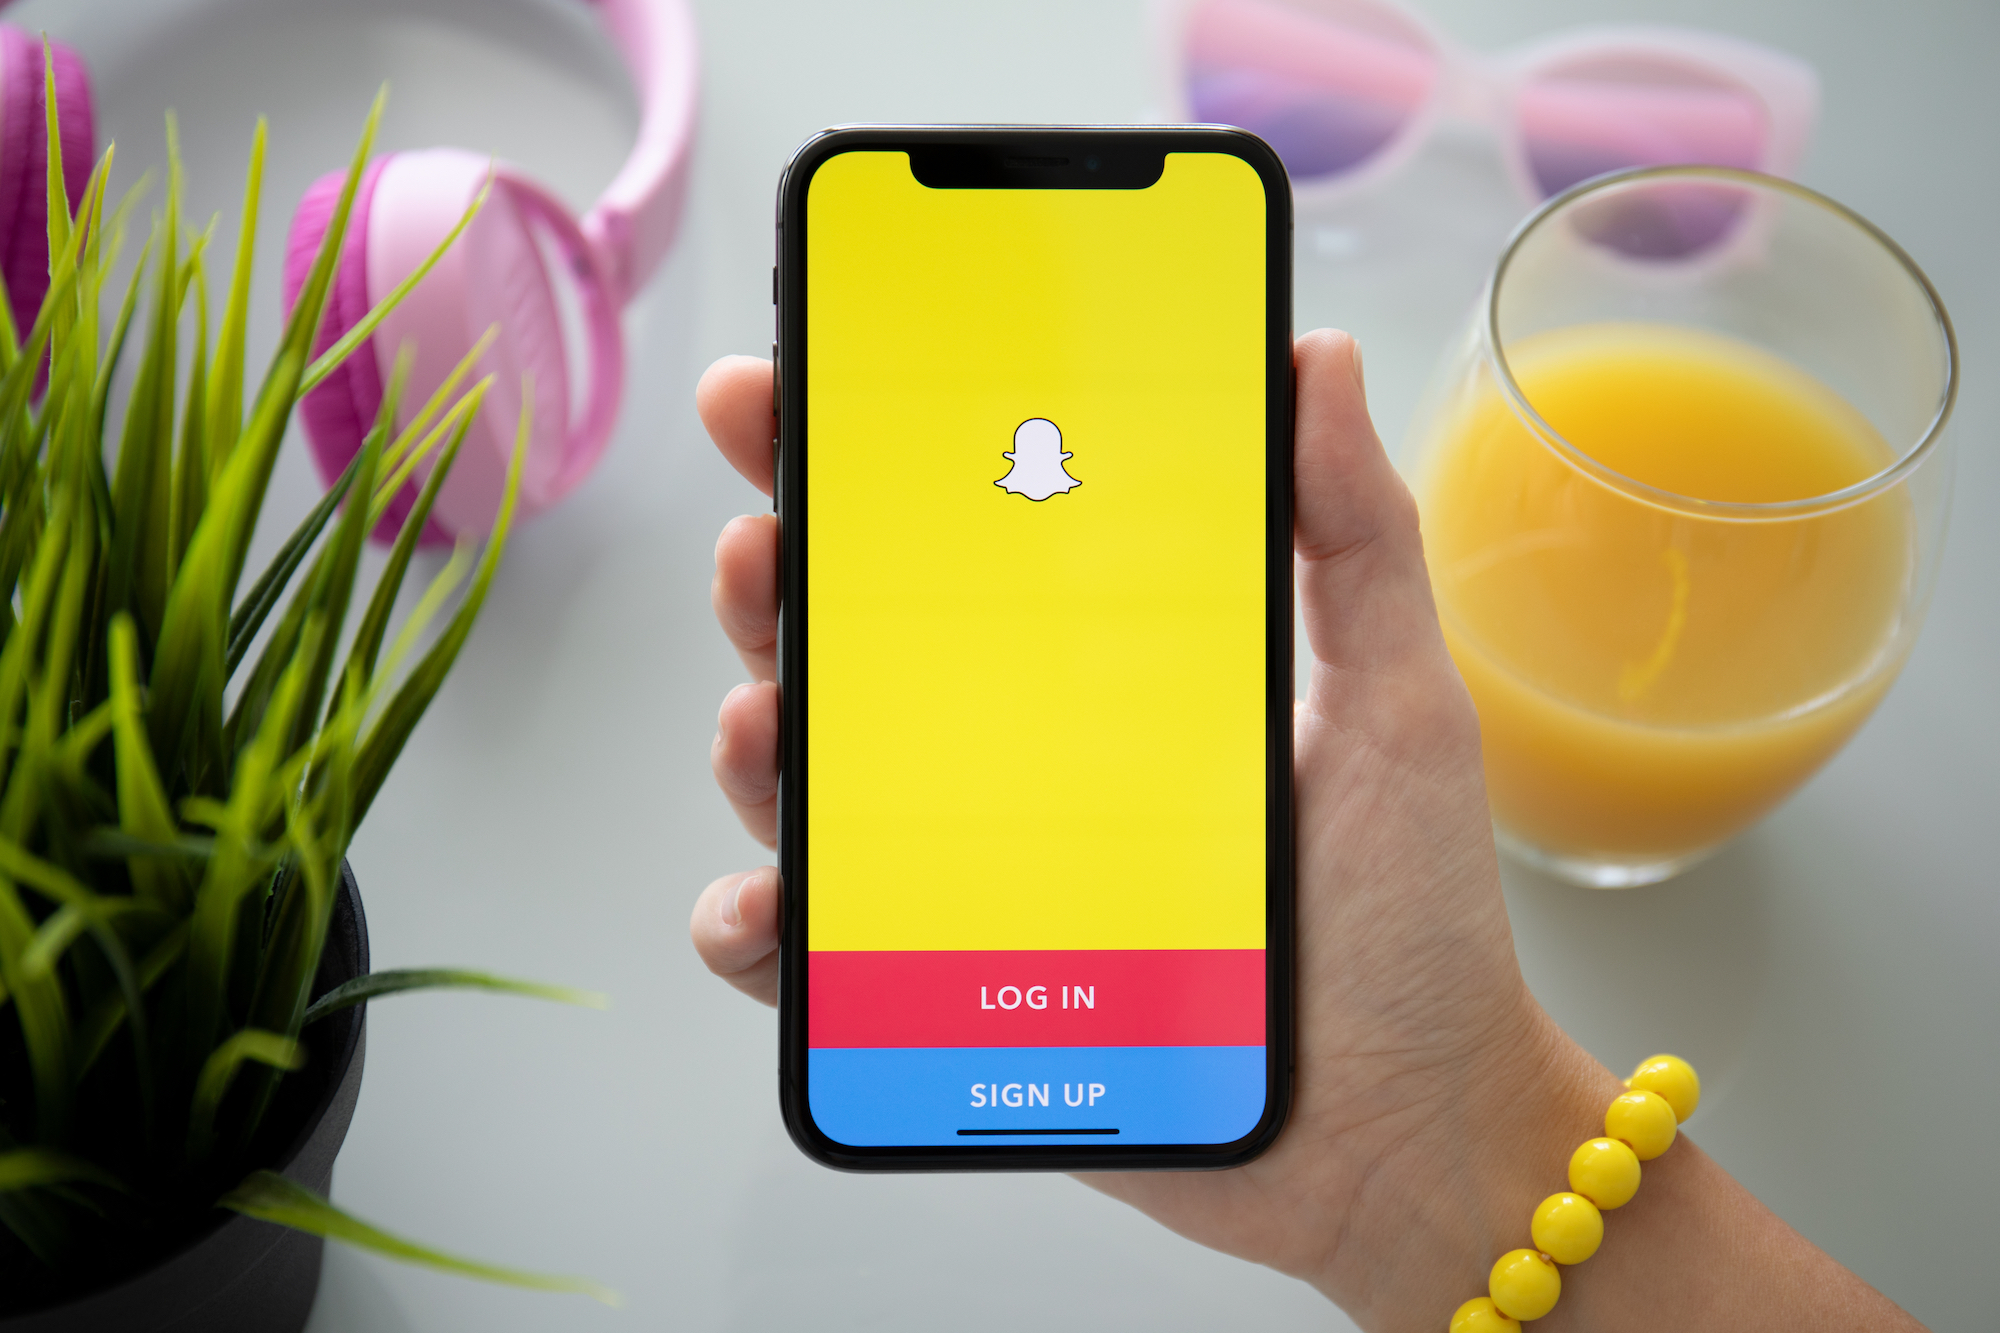 Snapchat lanza My AI: un nuevo chatbot para redes sociales